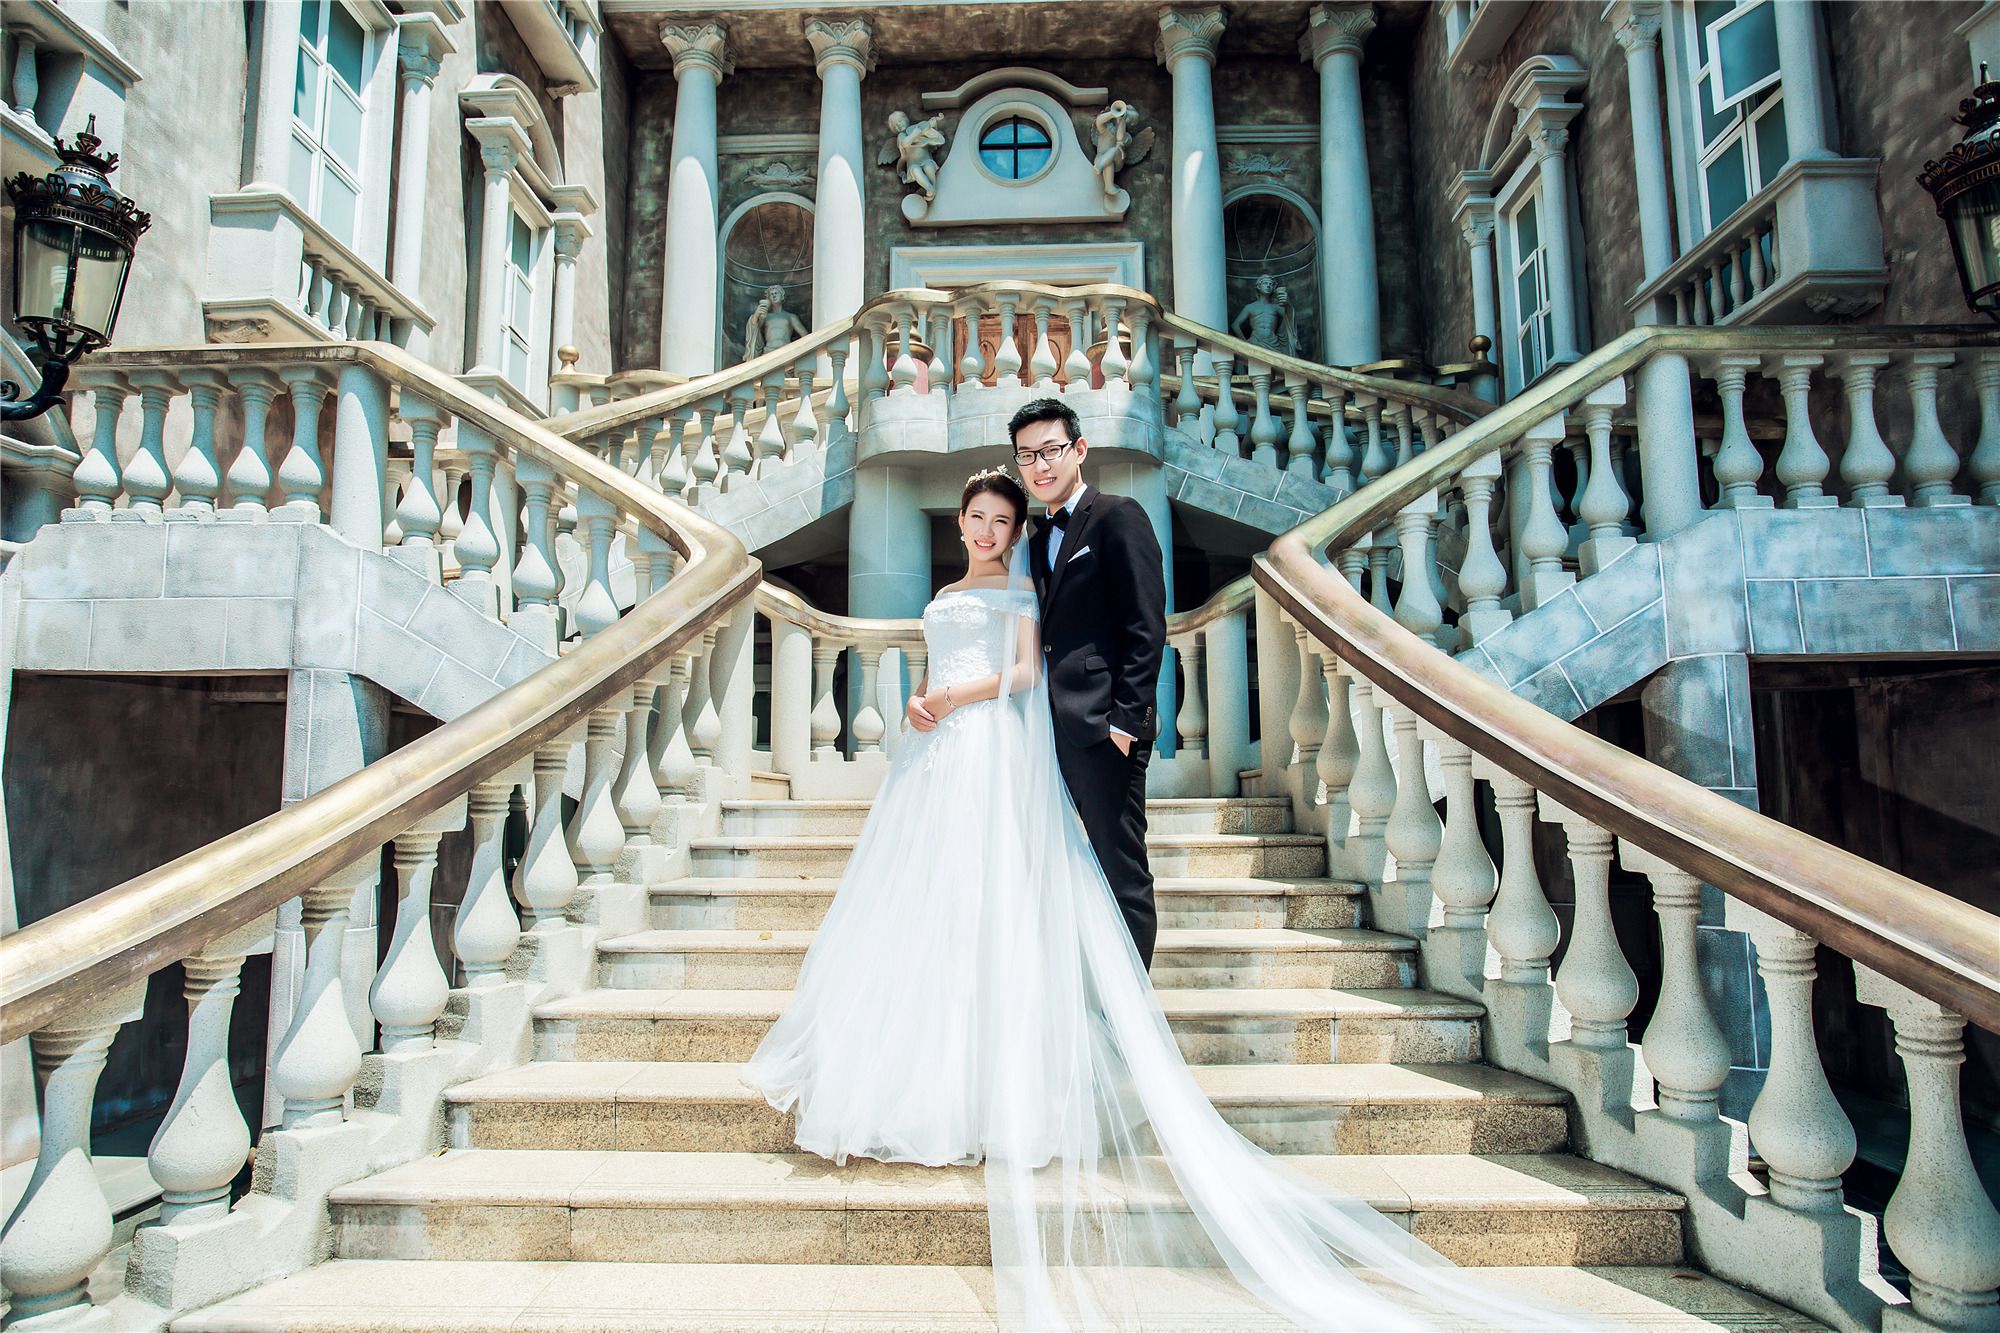 欧式结婚照|城堡婚纱摄影,[欧式, 城堡],深圳婚纱照,婚纱照图片